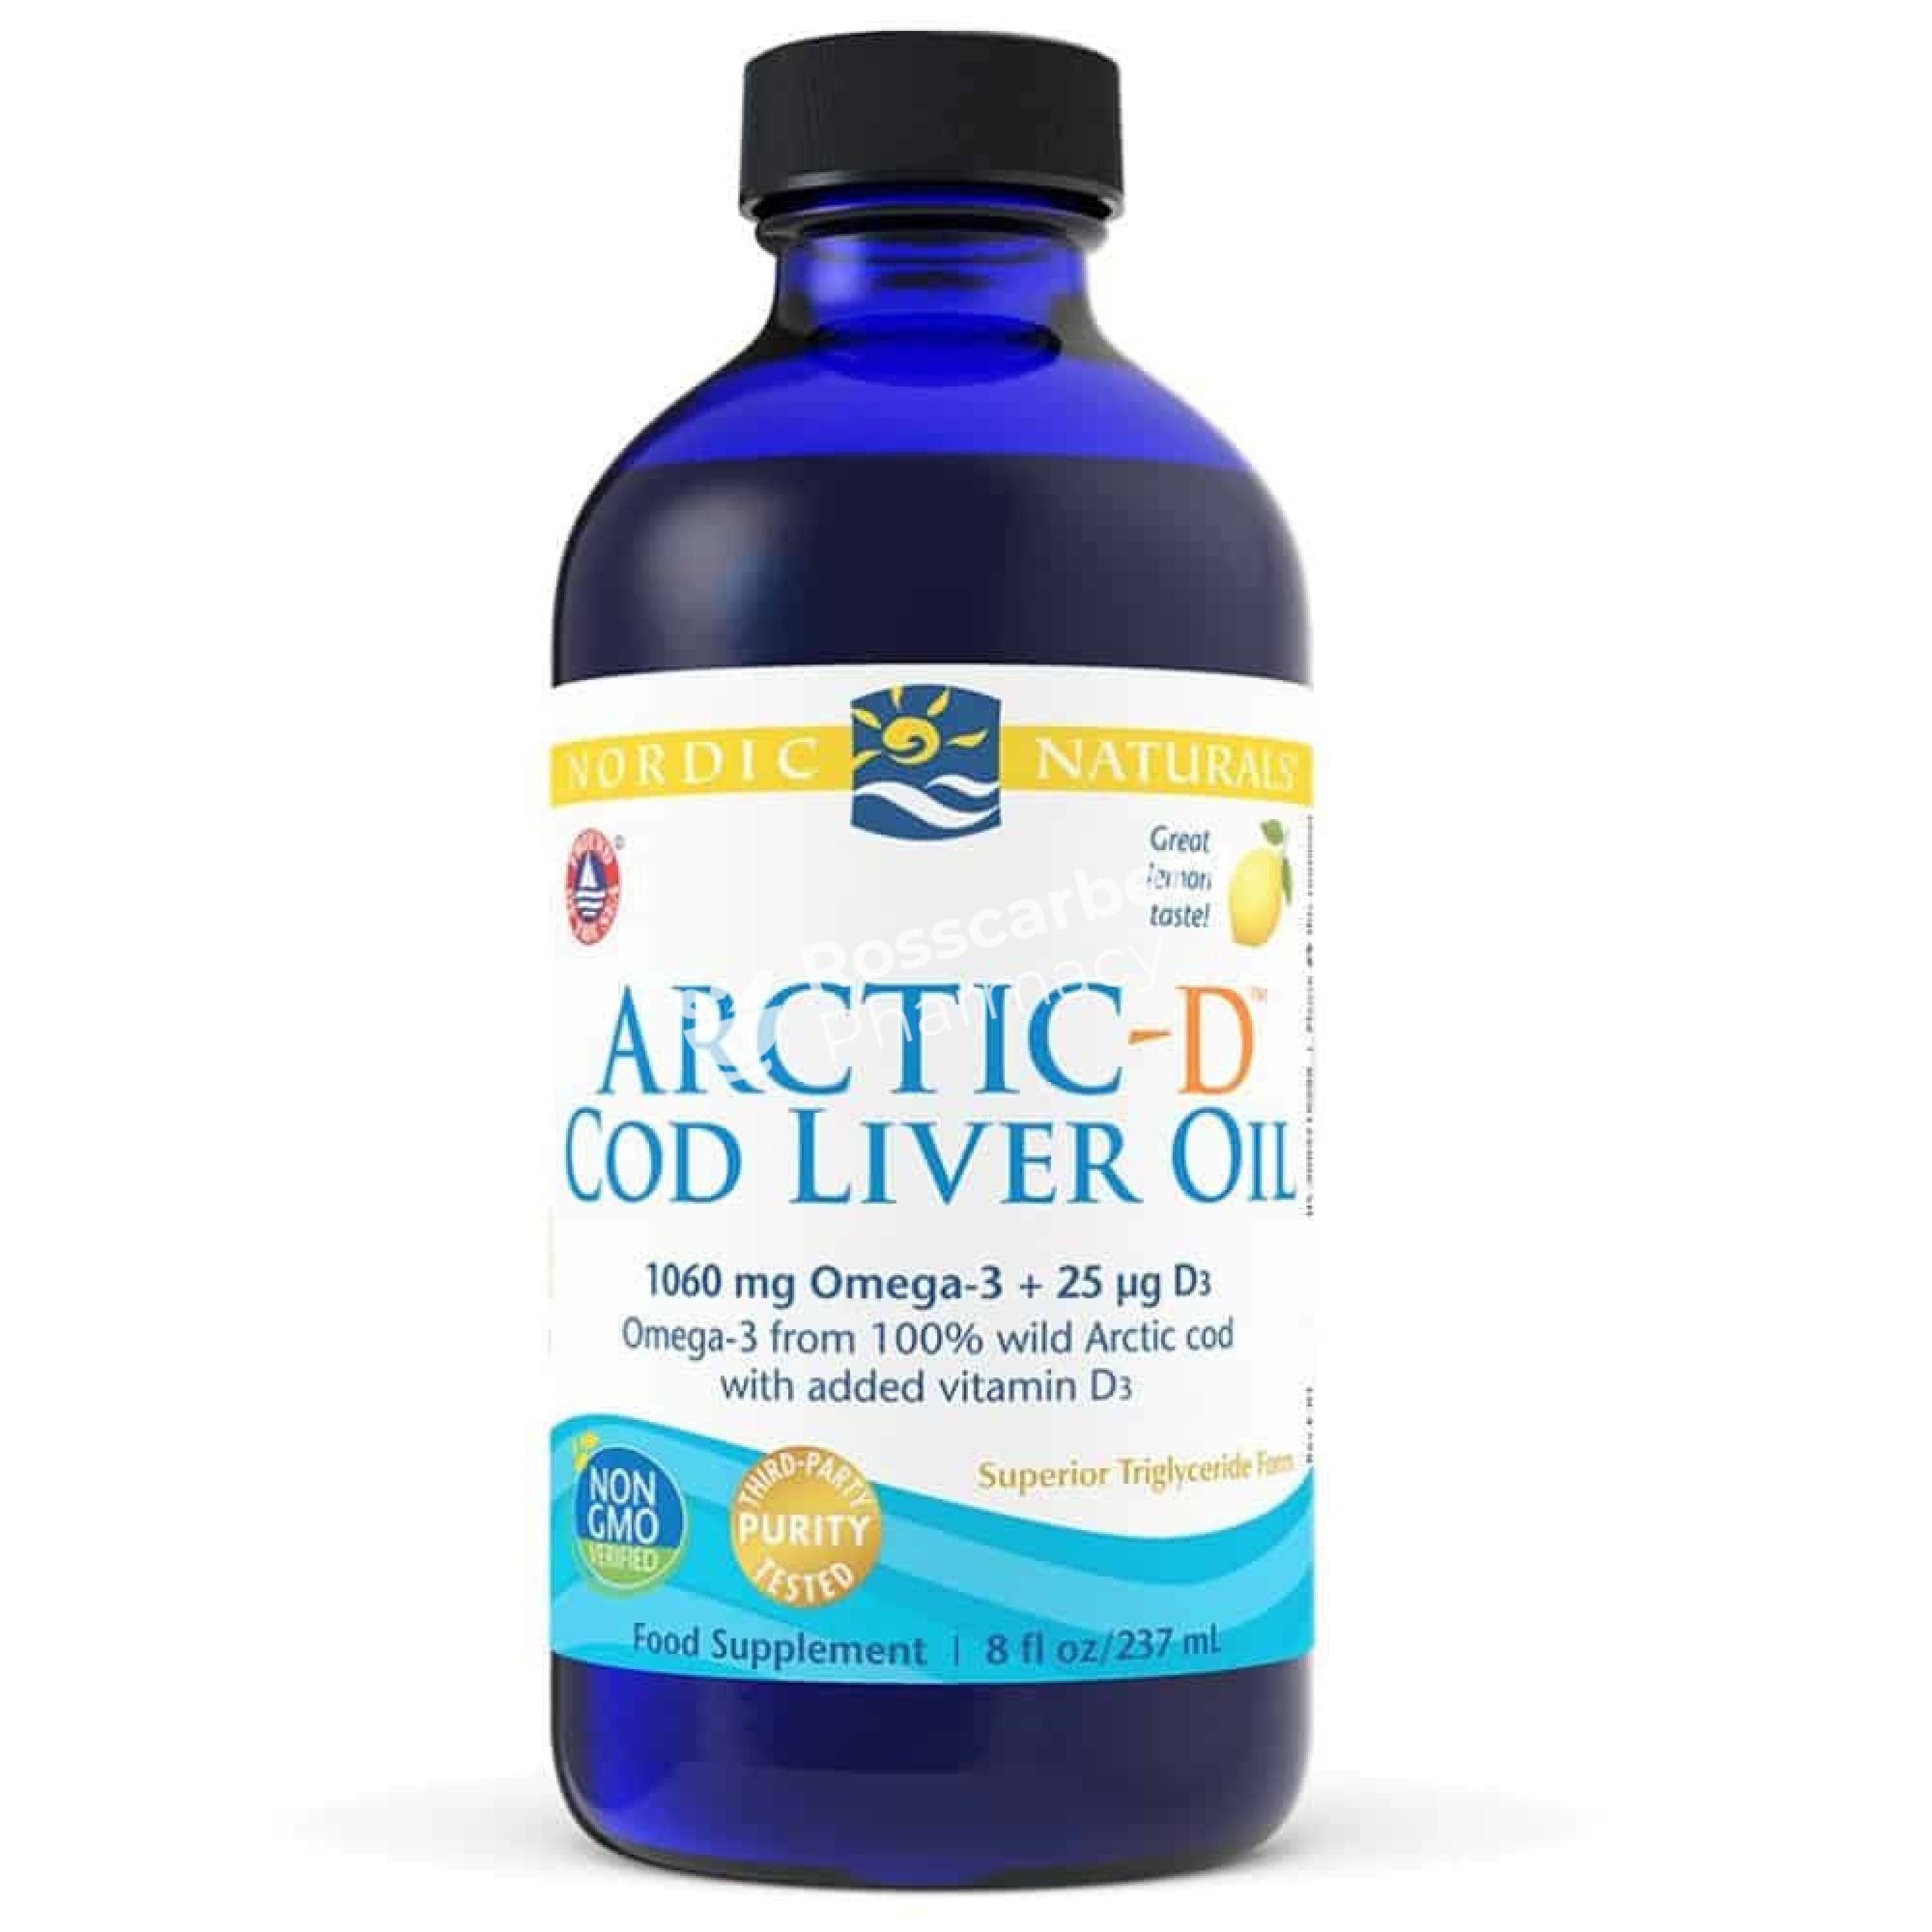 Nordic Naturals Artic-D Cod Liver Oil